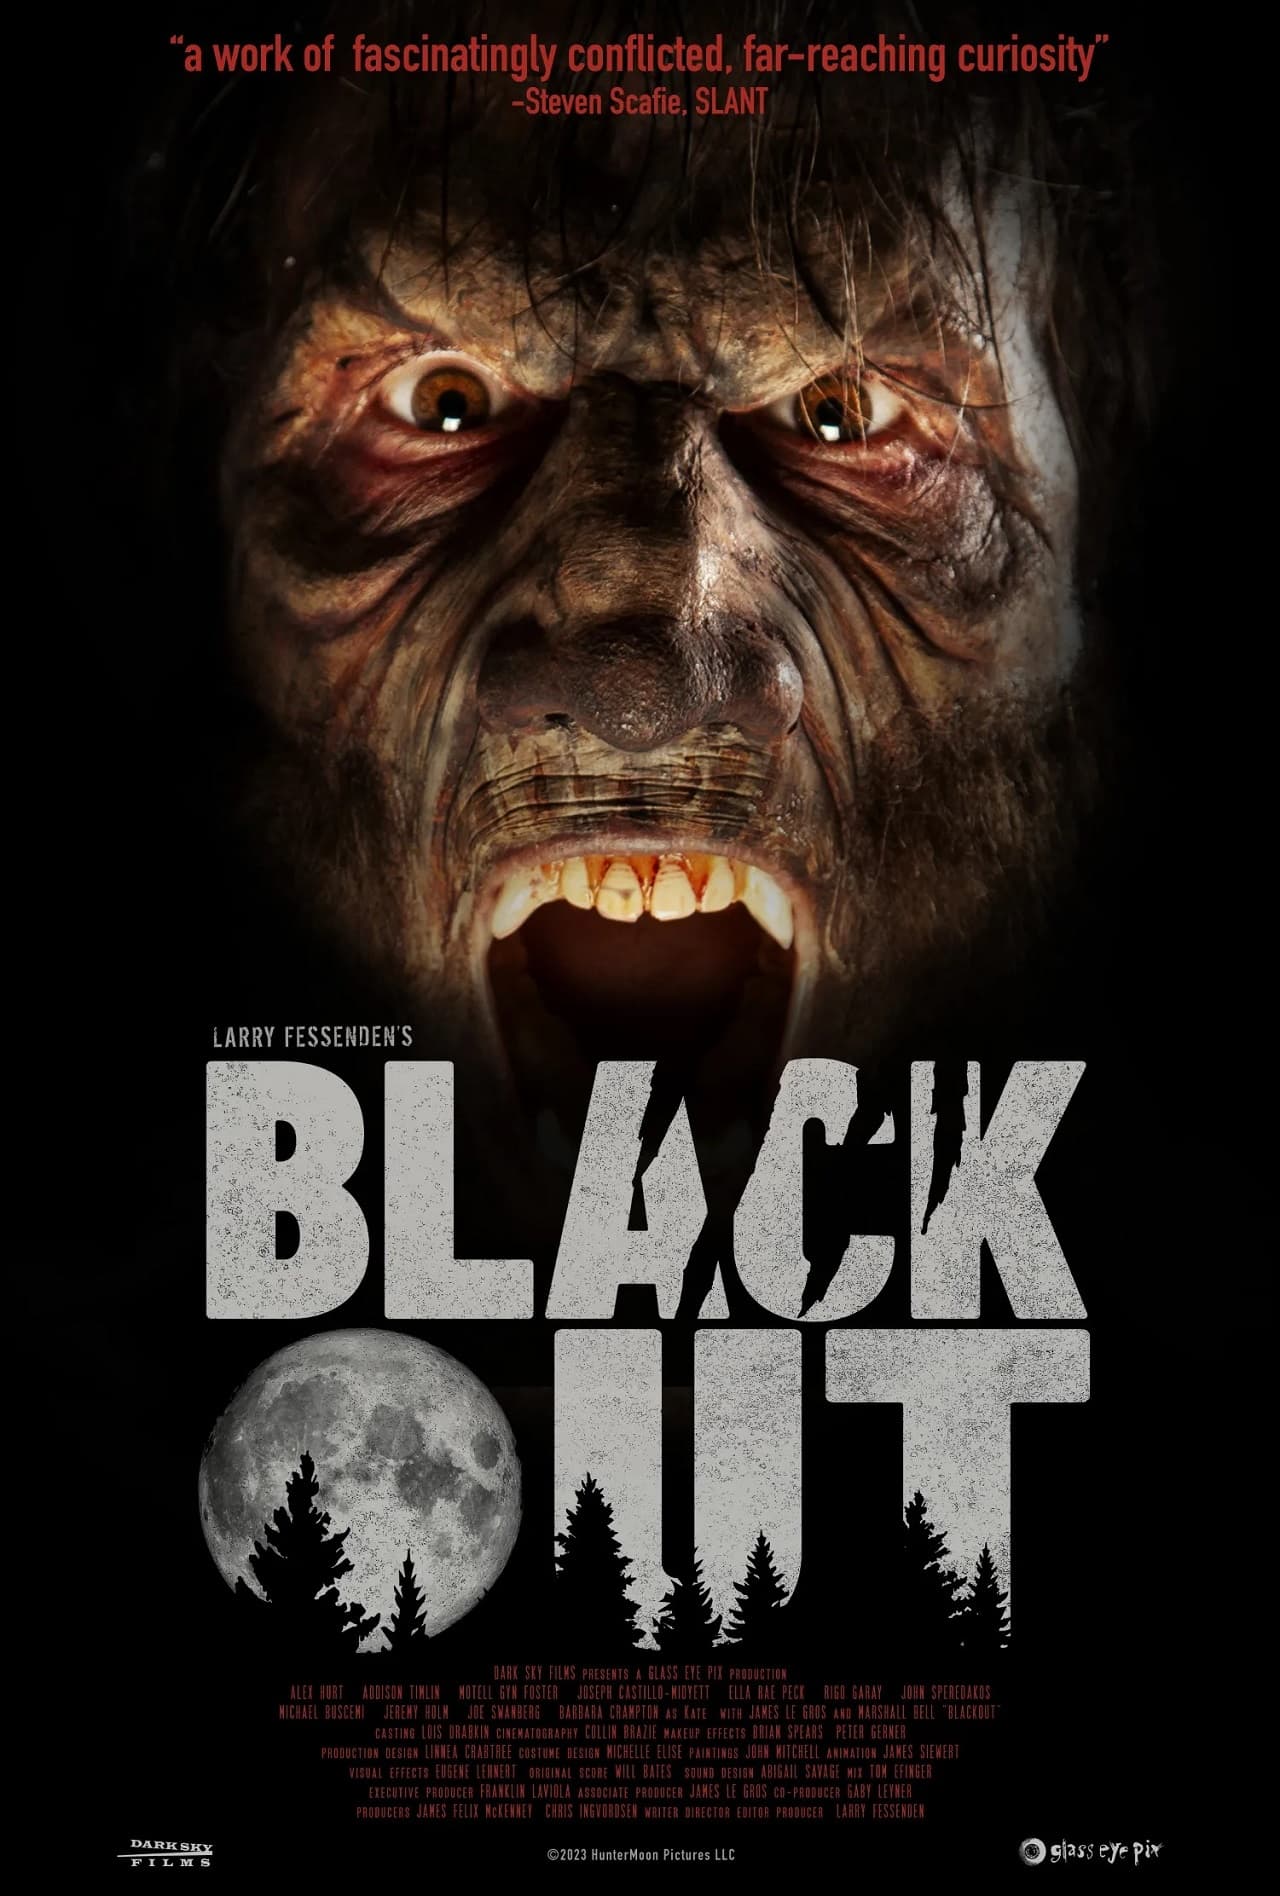 Постер хоррора Blackout («Затмение») Ларри Фессендена - 01